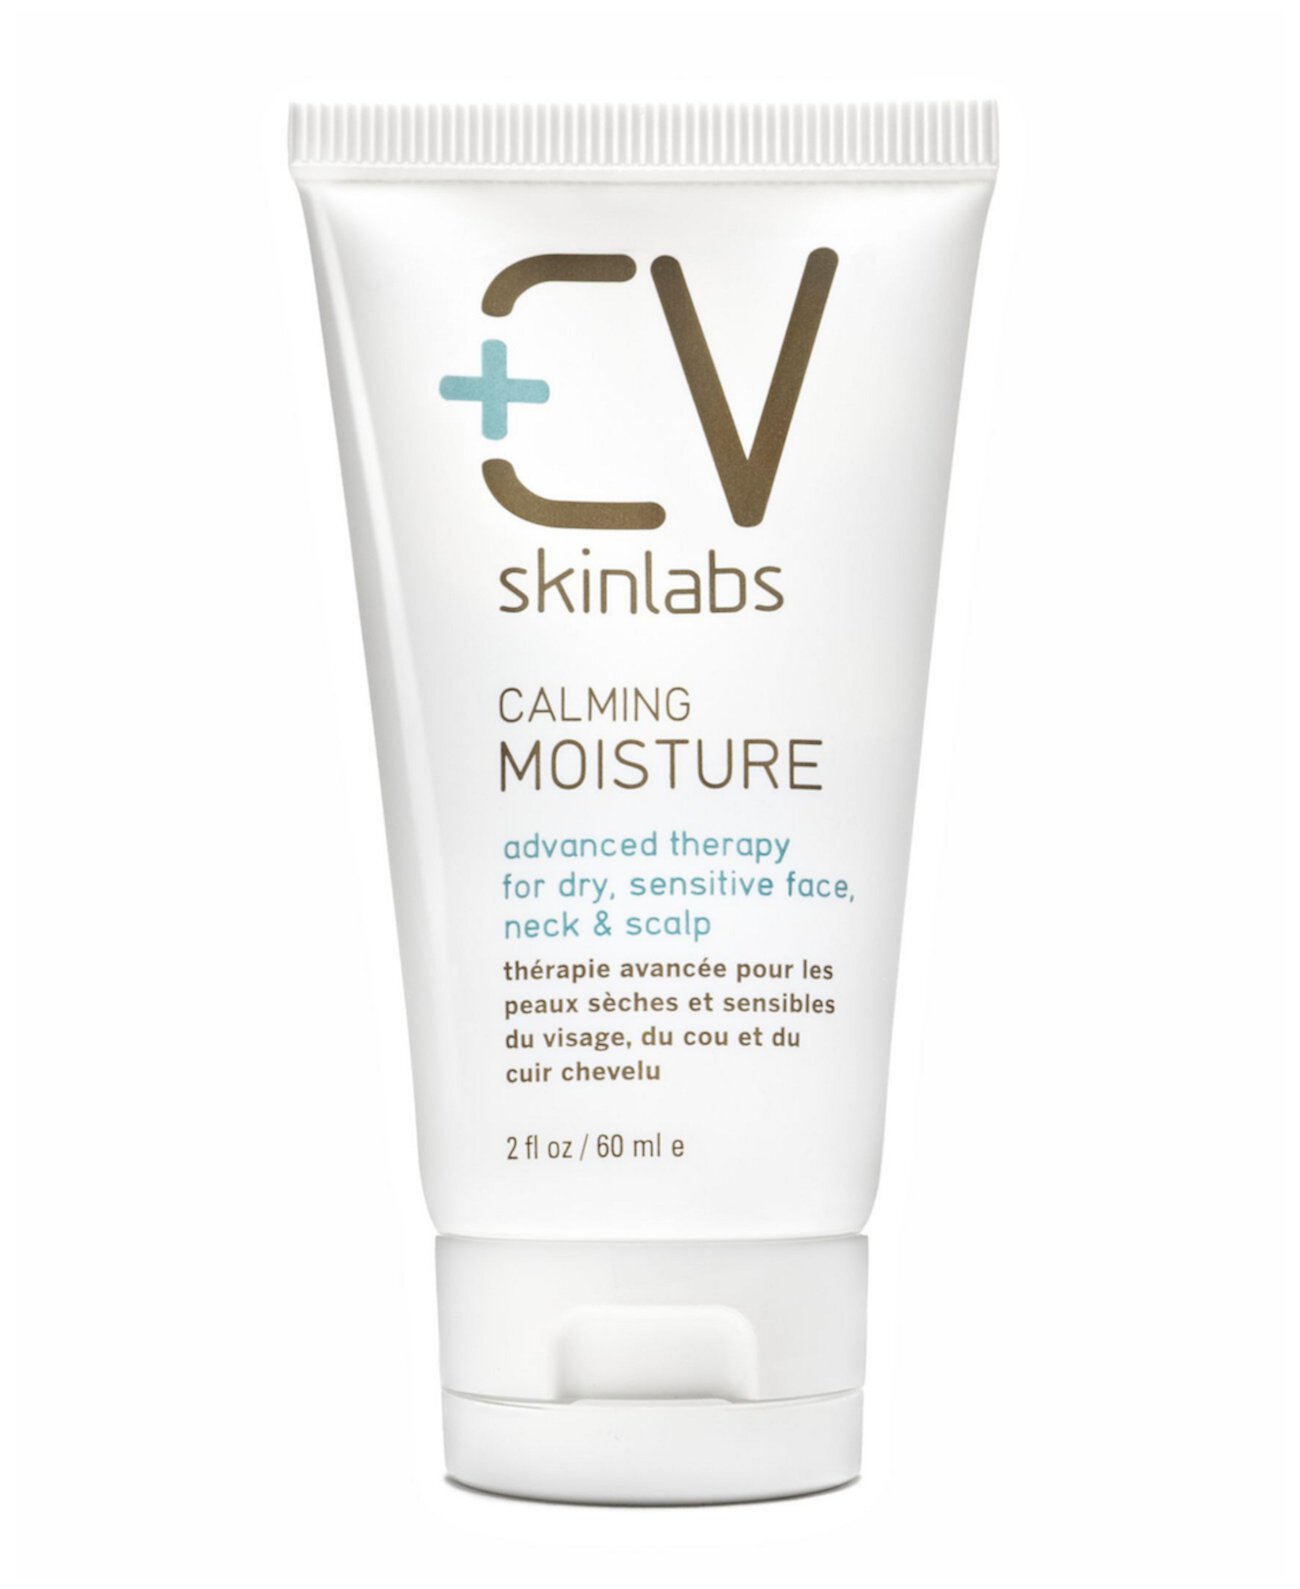 Успокаивающая увлажняющая передовая терапия для лица, шеи и кожи головы, а также для сухой, тусклой и чувствительной кожи CV Skinlabs